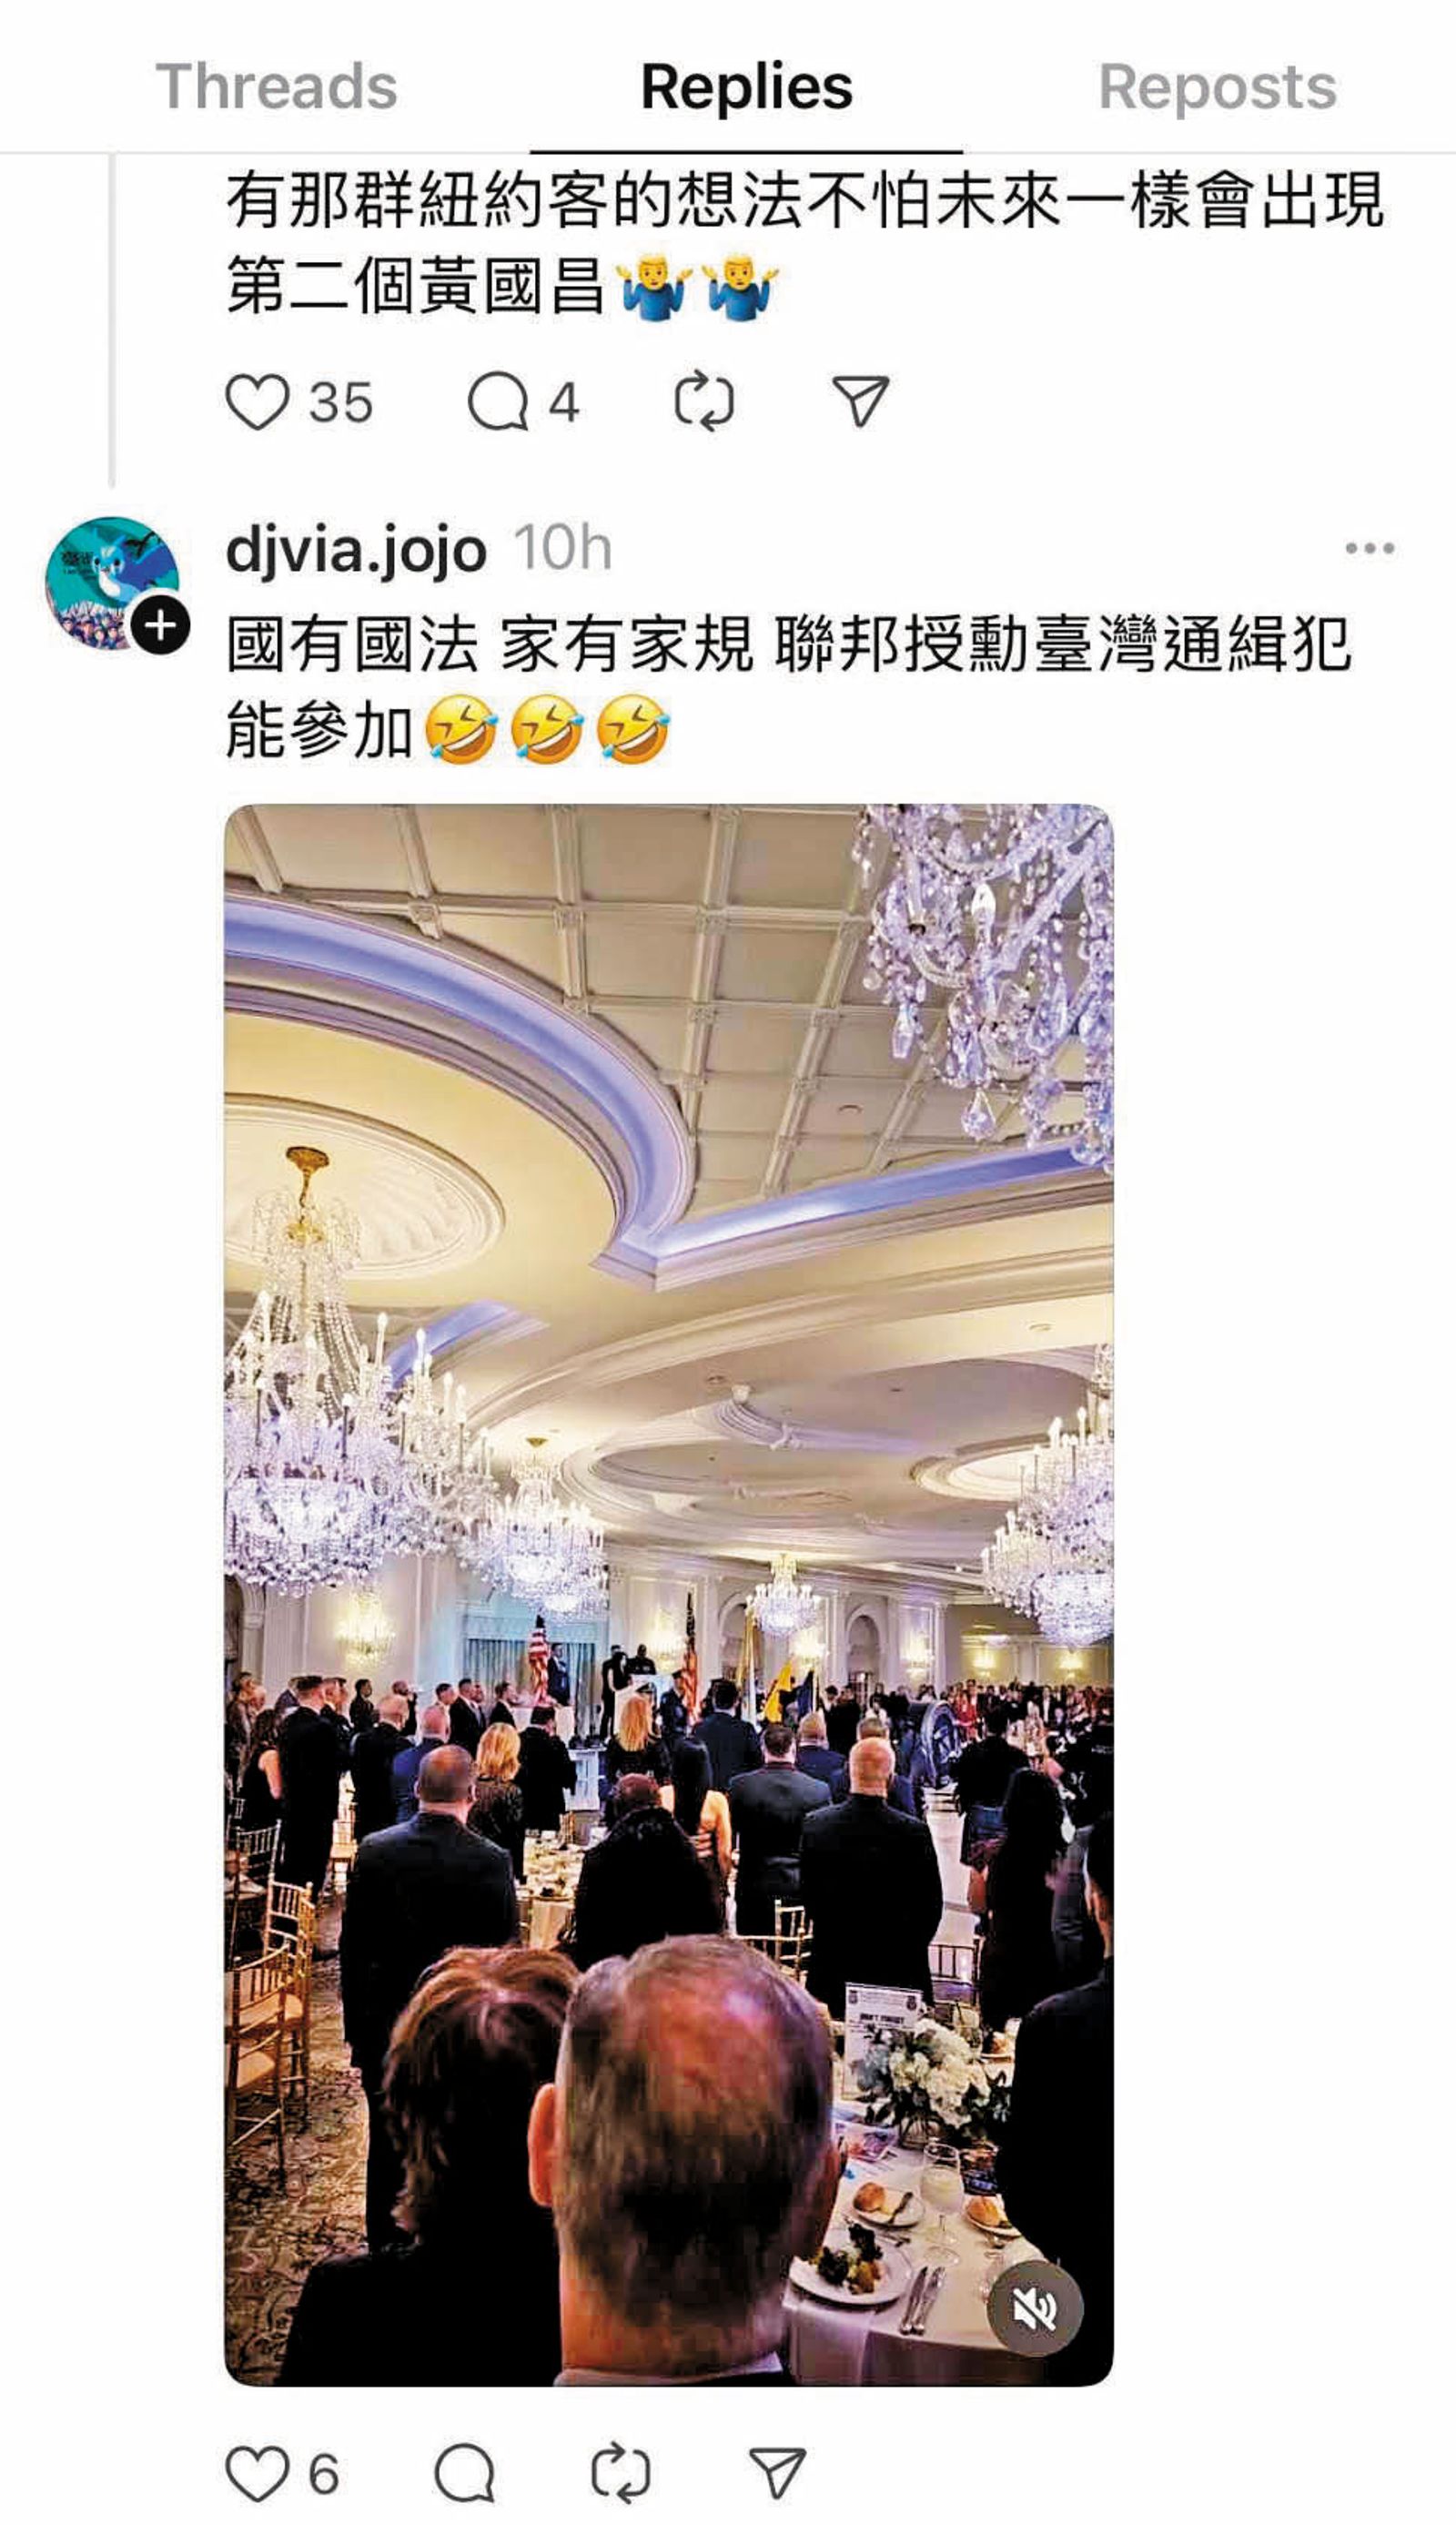 劉喬安po文宣稱以通緝犯身分參加美國聯邦晚宴，其實是盜用其他照片。（翻攝djvia.jojo Threads）